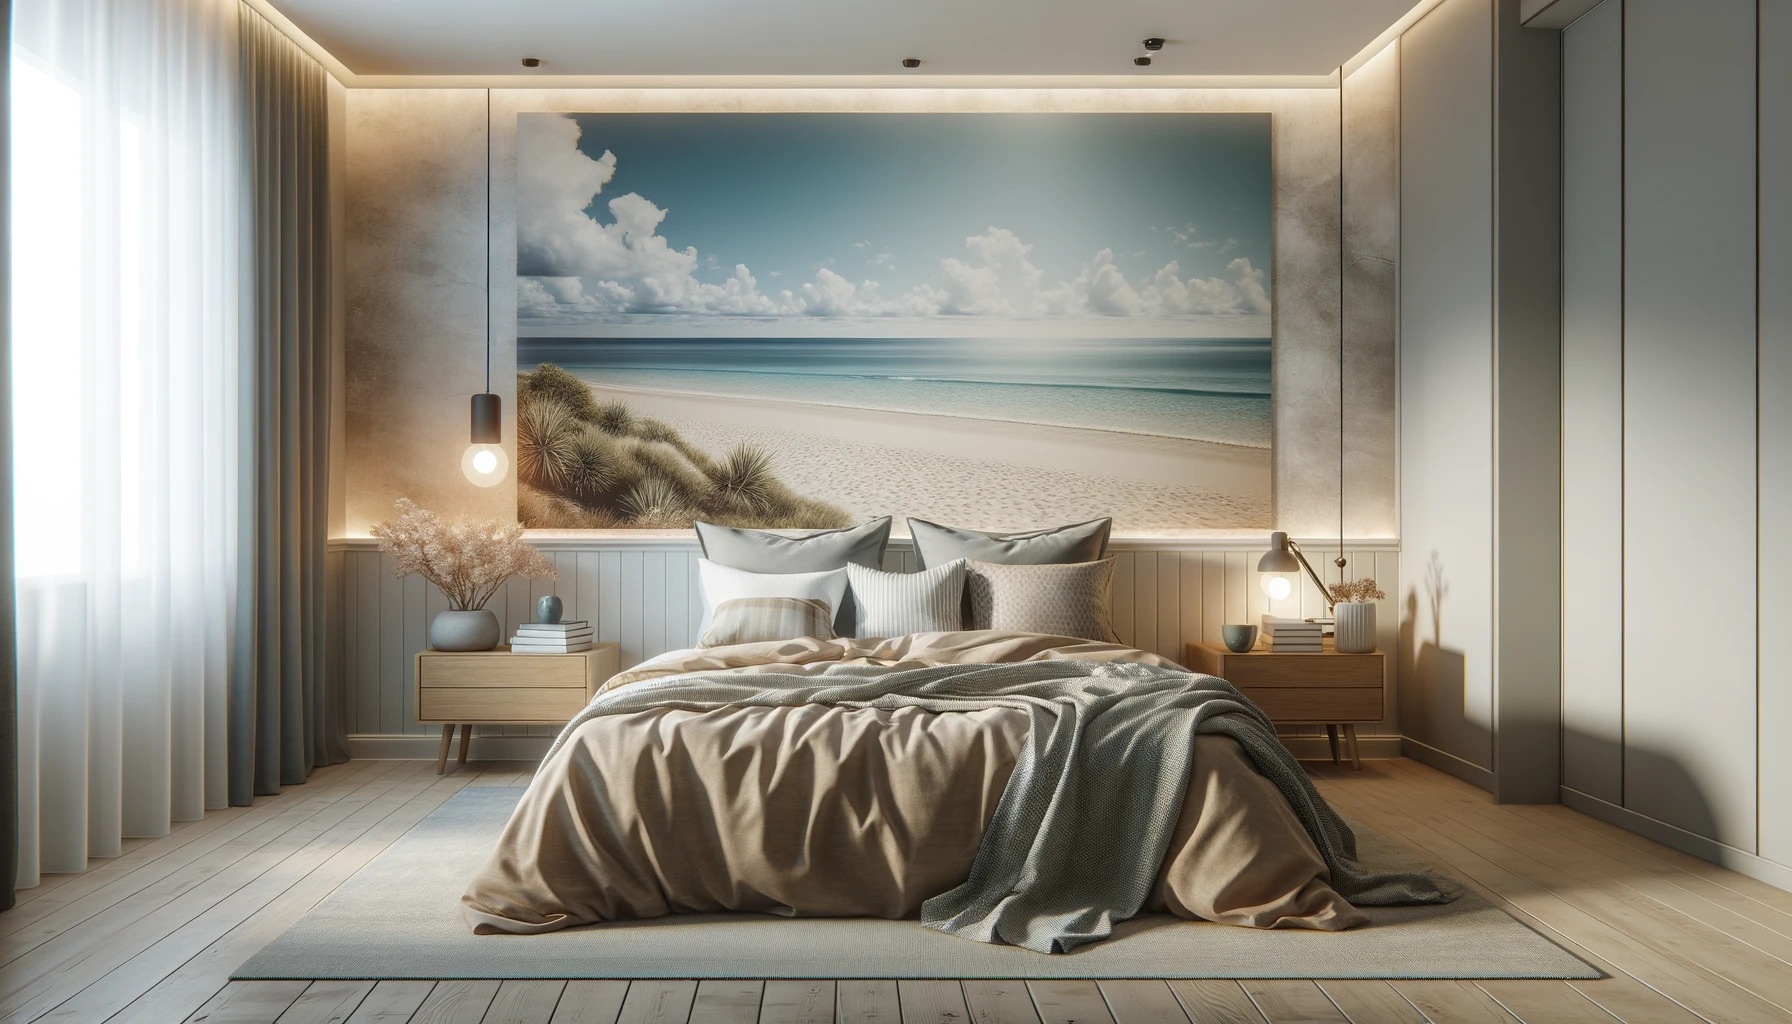 Wandgestaltung im Schlafzimmer mit Meerblick